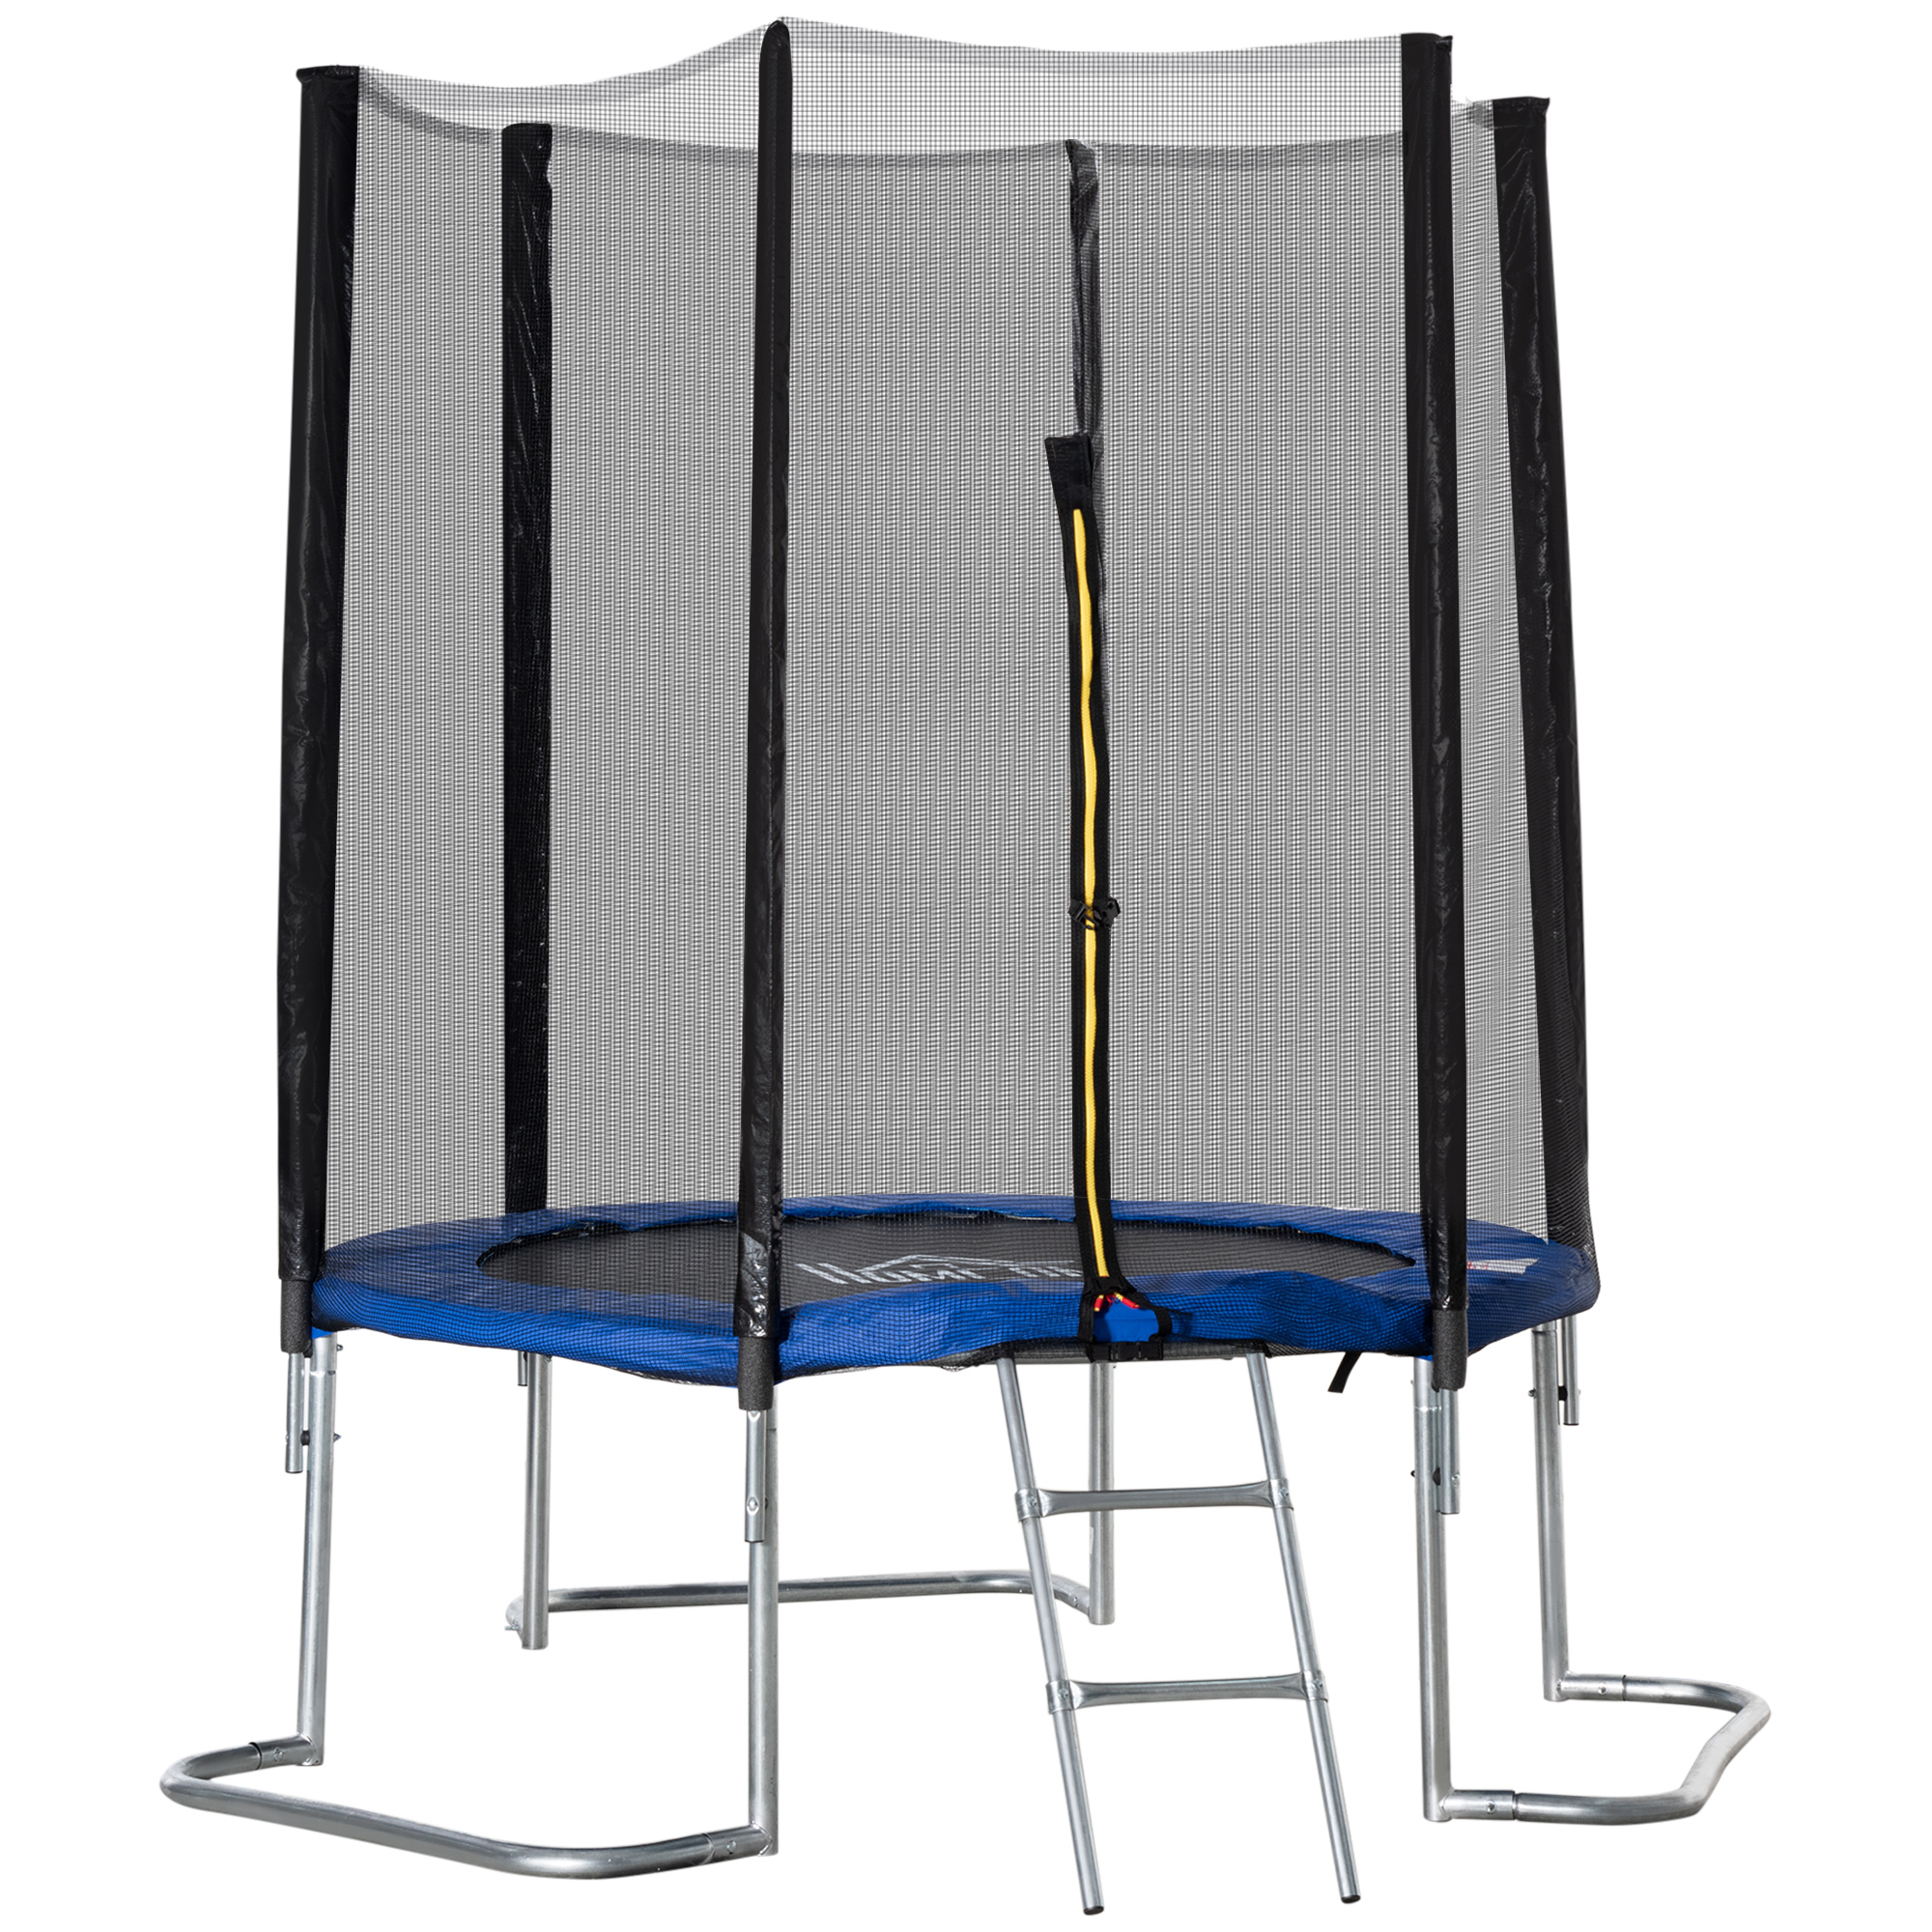 homcom trampoline pour enfant Ã˜ 223 cm avec filet de sÃ©curitÃ©, Ã©chelle et porte zippÃ©e - usage extÃ©rieur intÃ©rieur - bleu